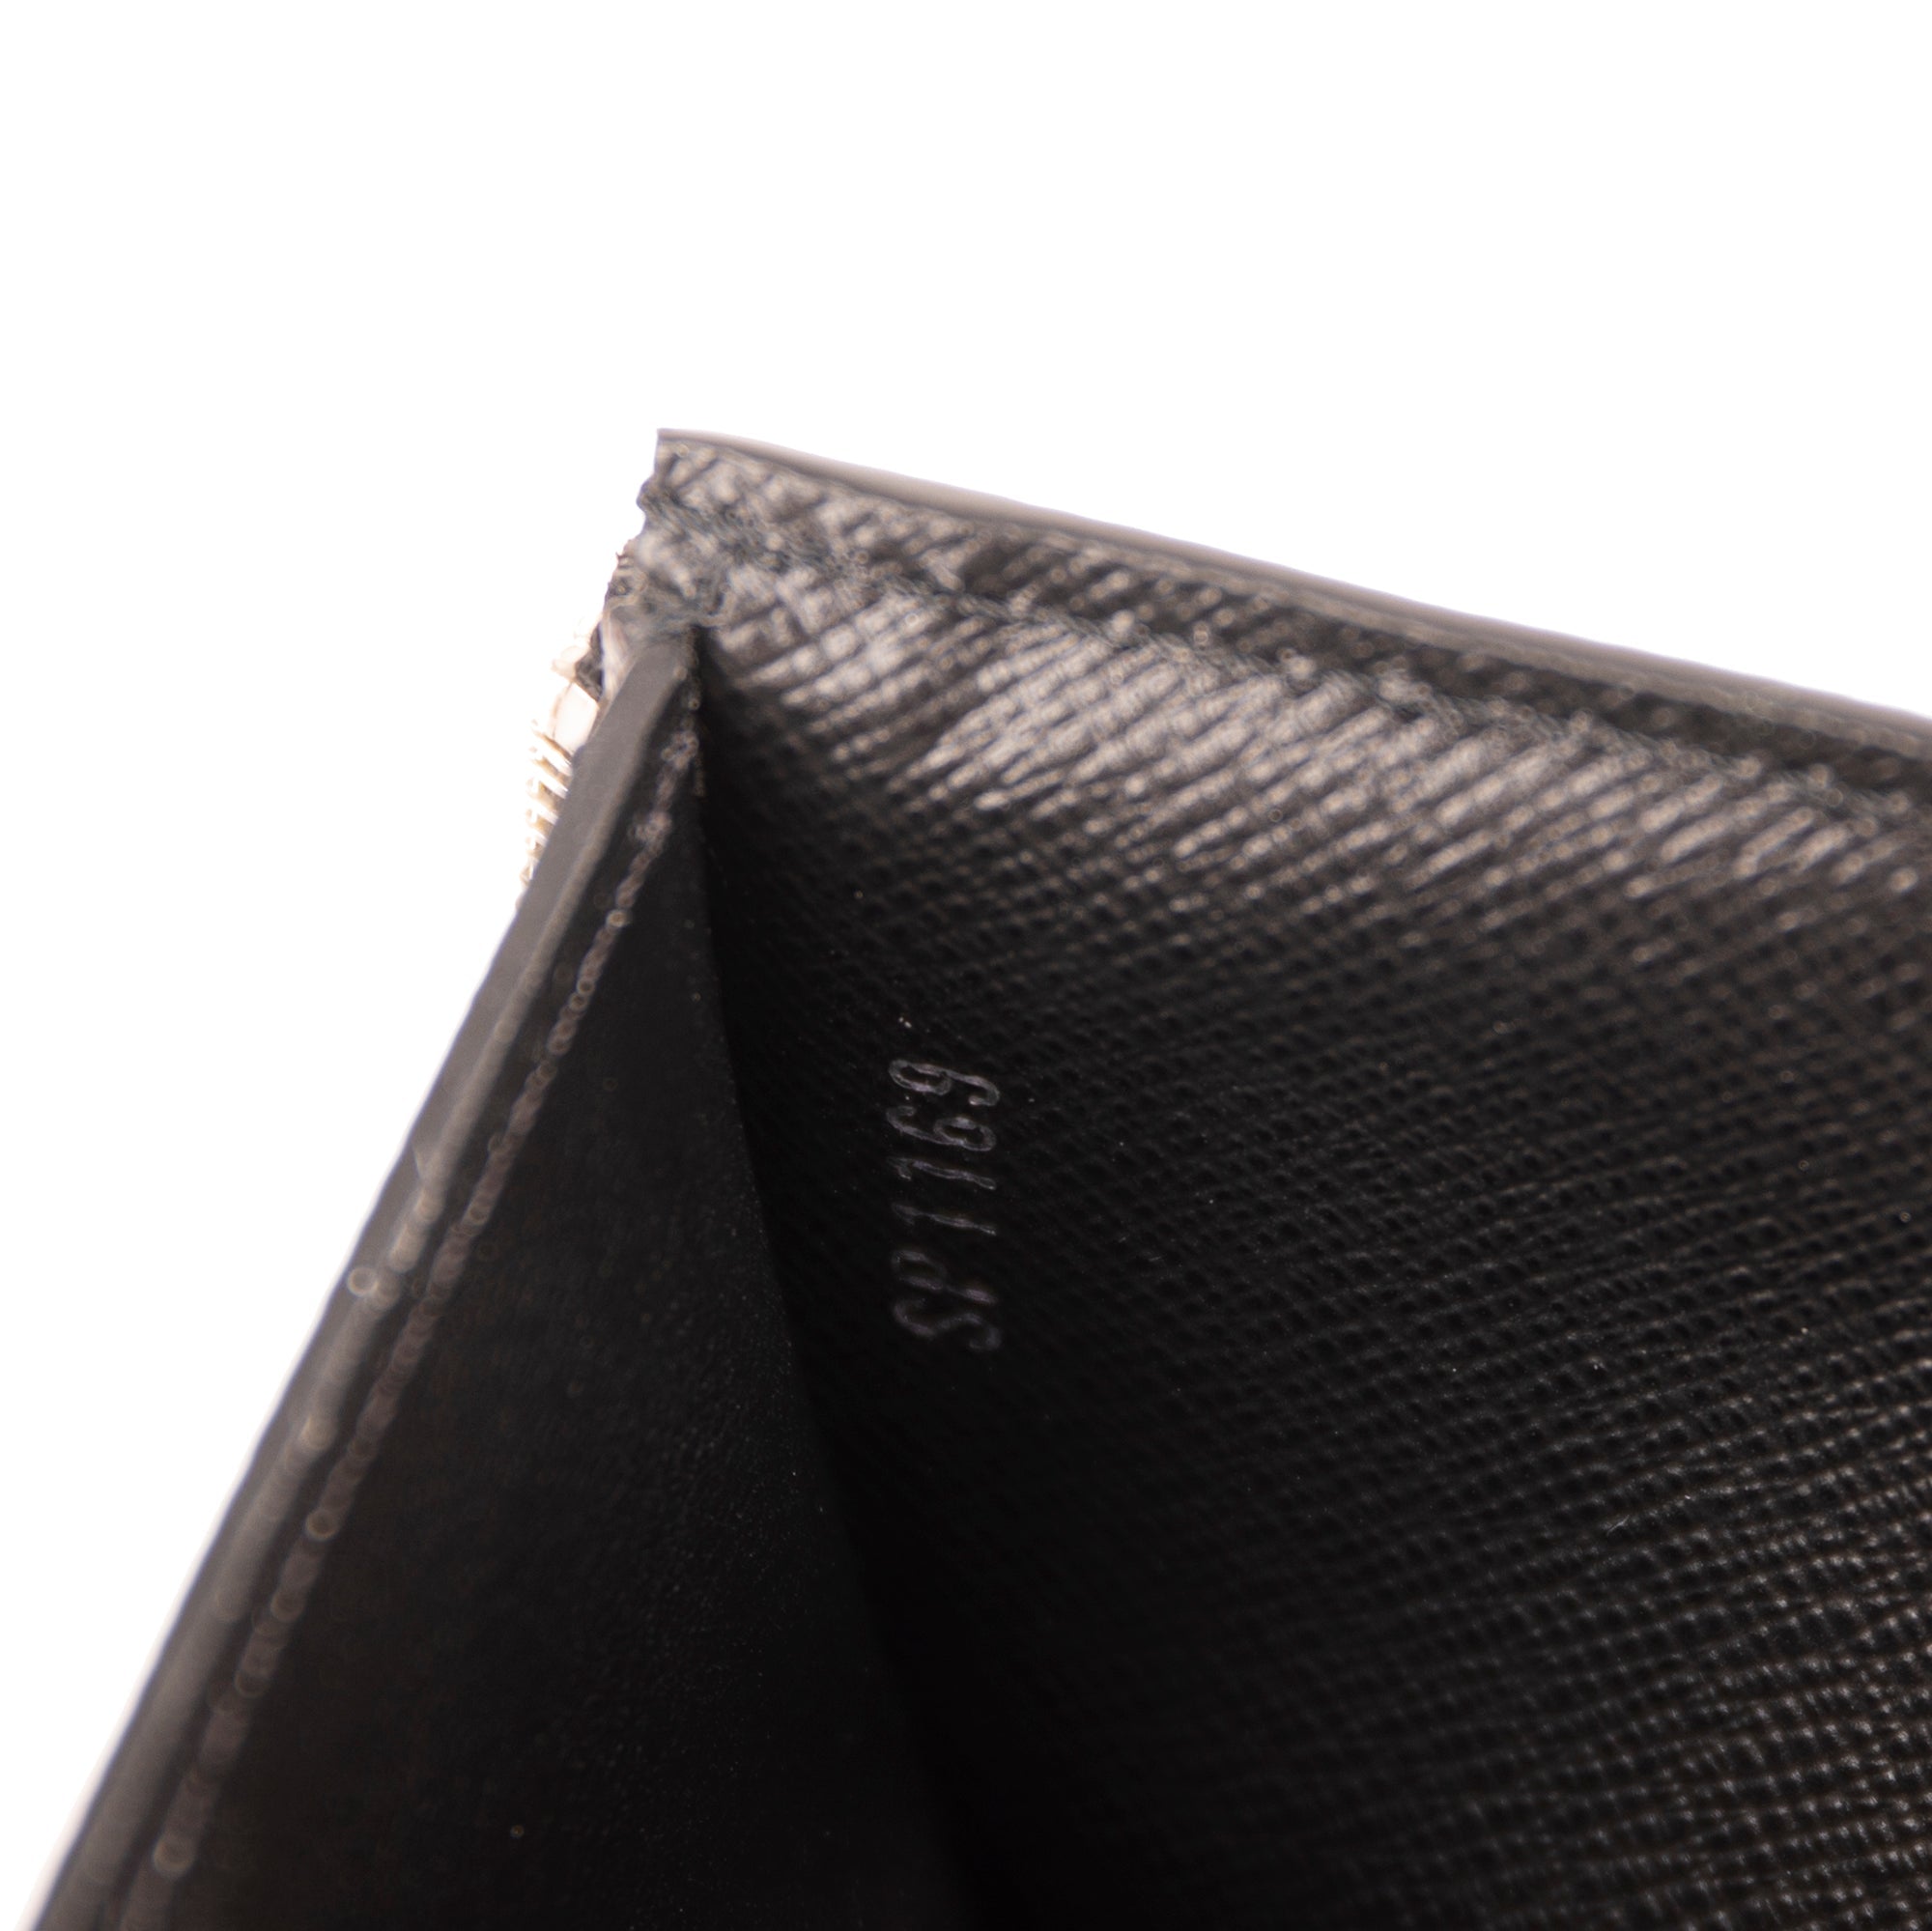 Louis Vuitton Black Epi Leather Victorine Wallet Louis Vuitton